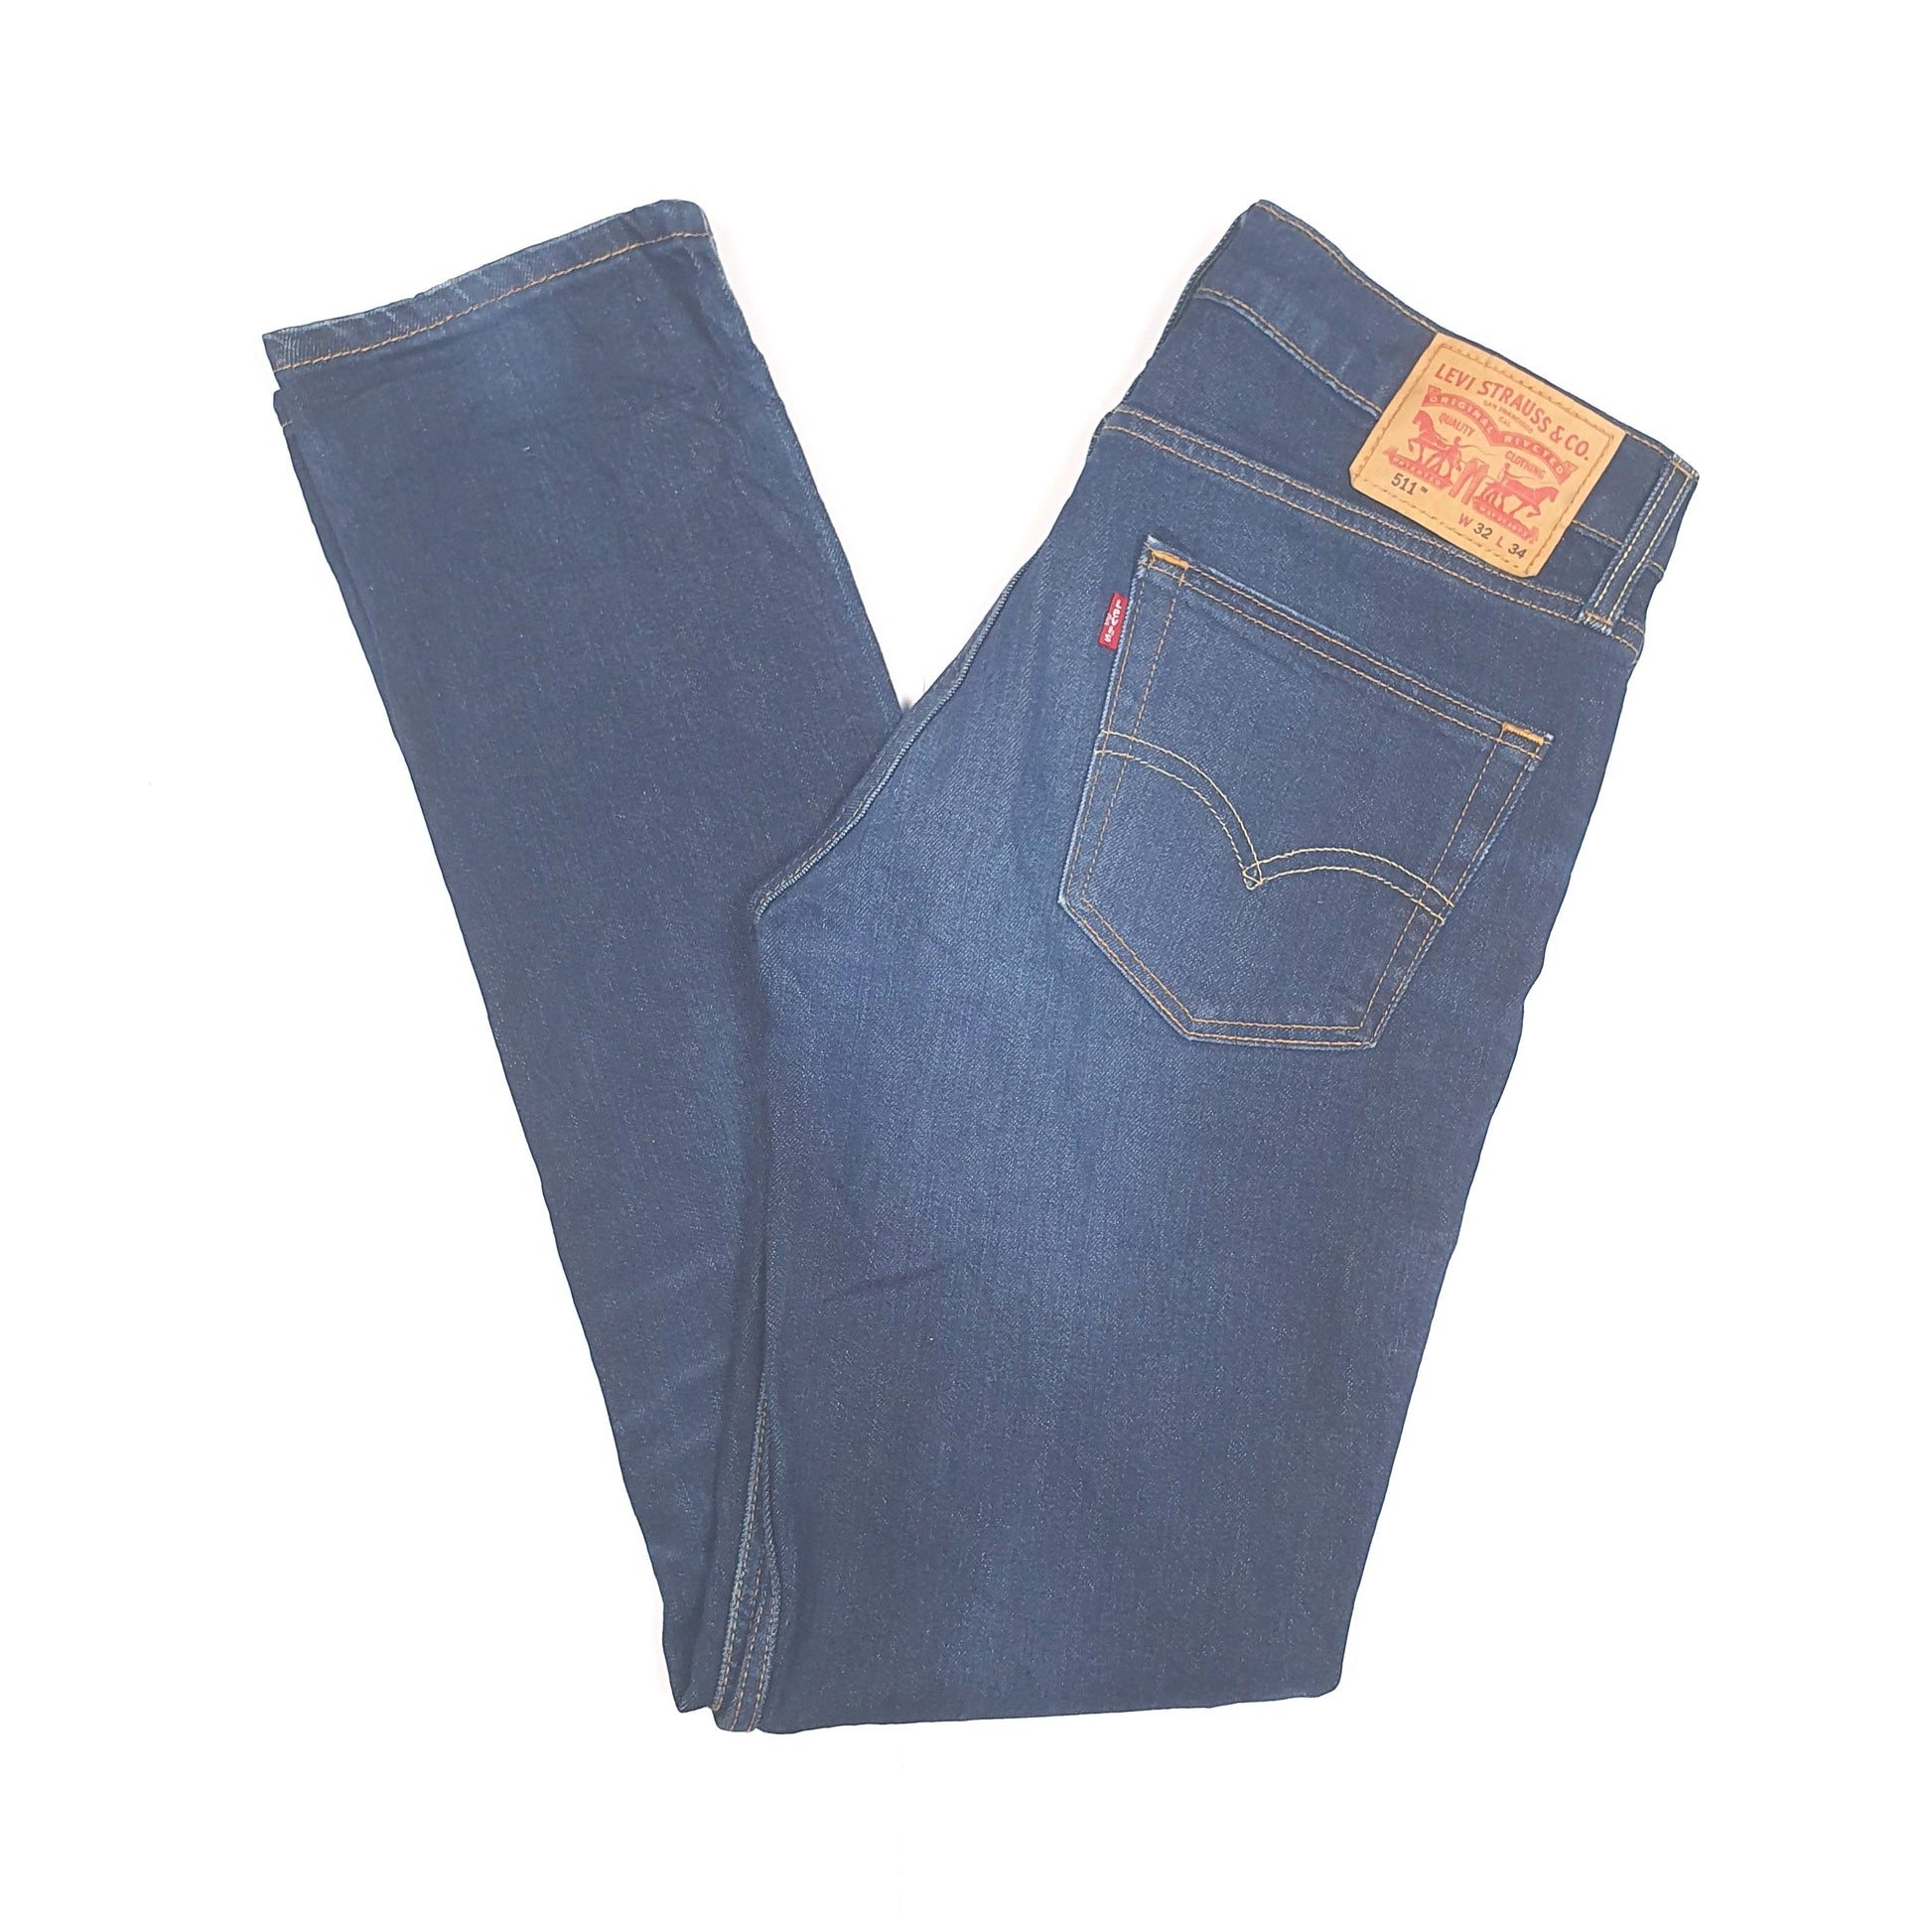 Blue Levis 511 Jeans